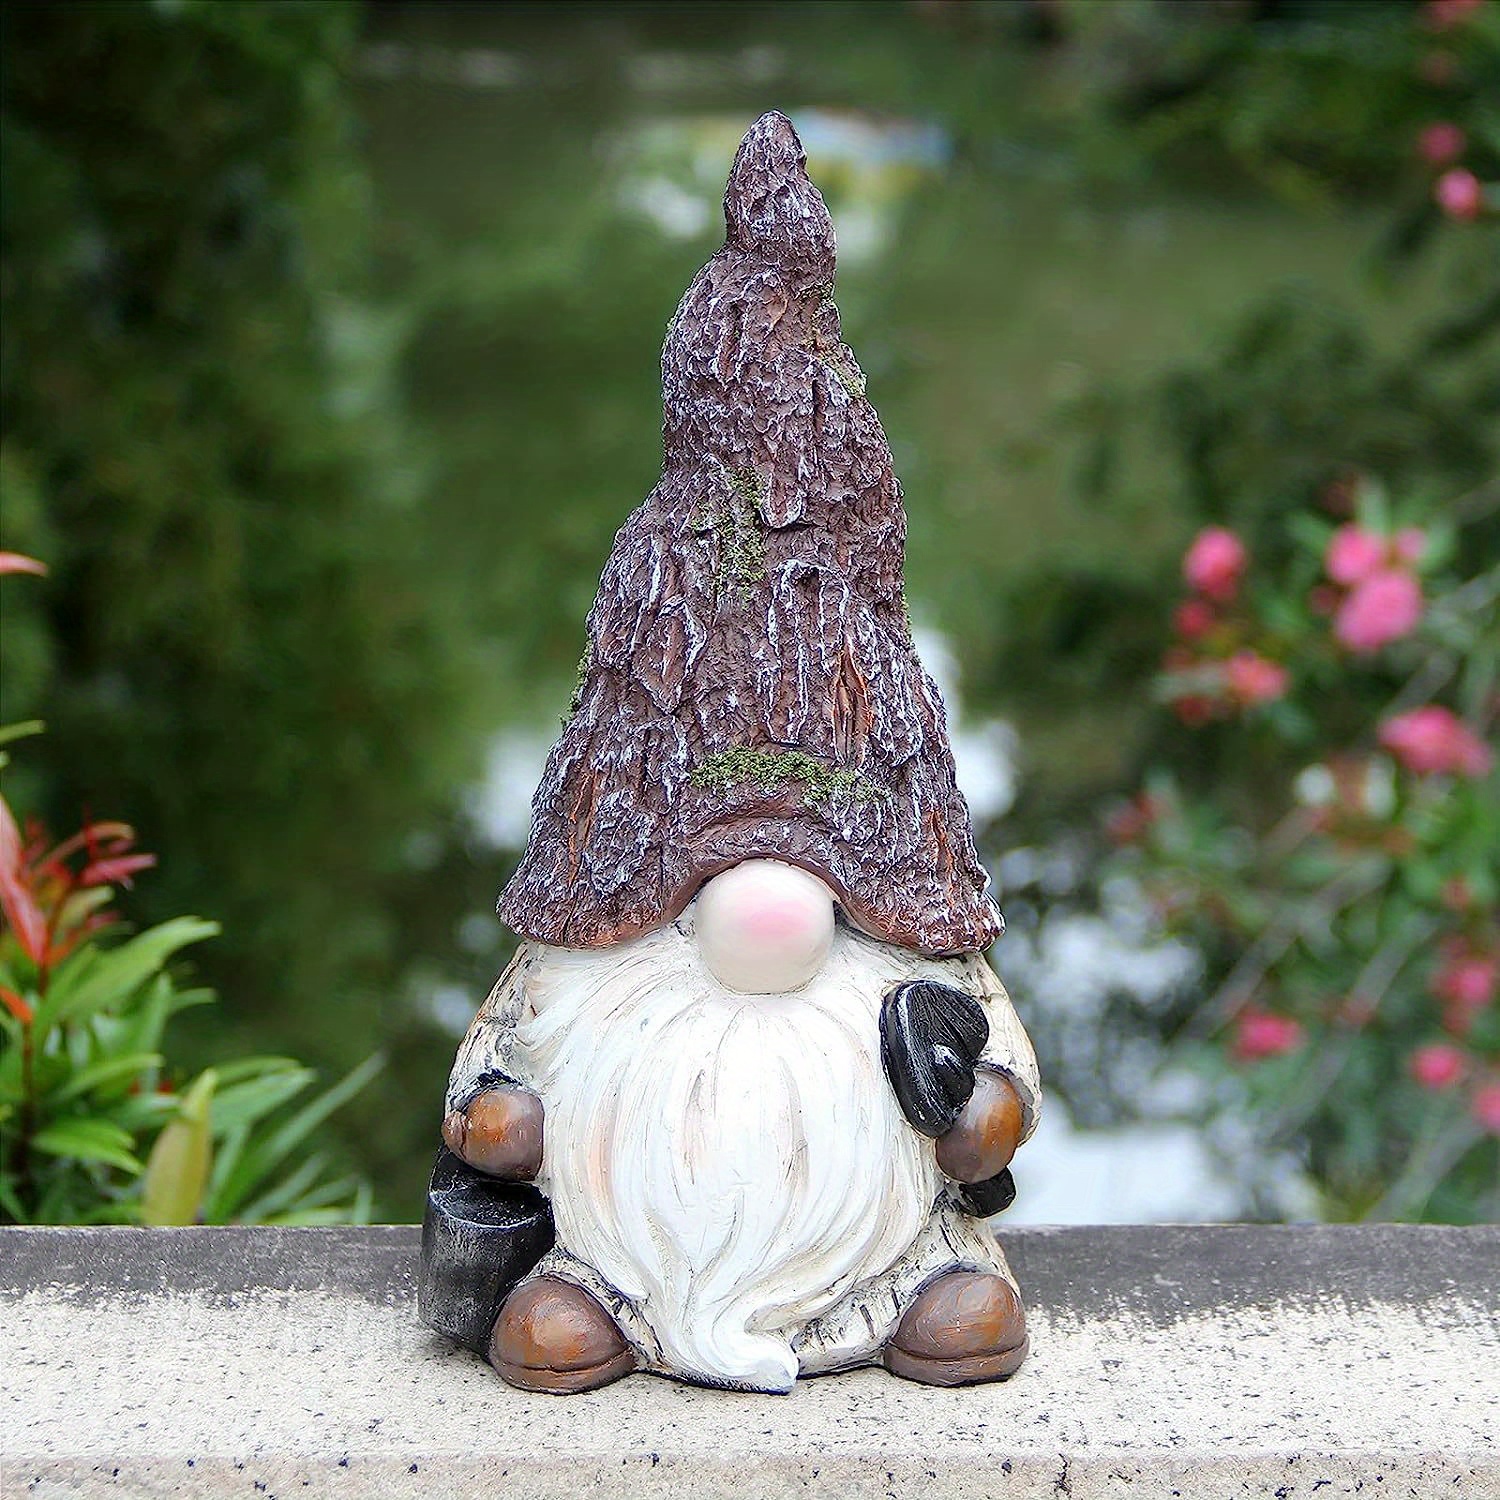 Statues Pour Jardin,Sculptures Et Statues De Jardin,Gnomes